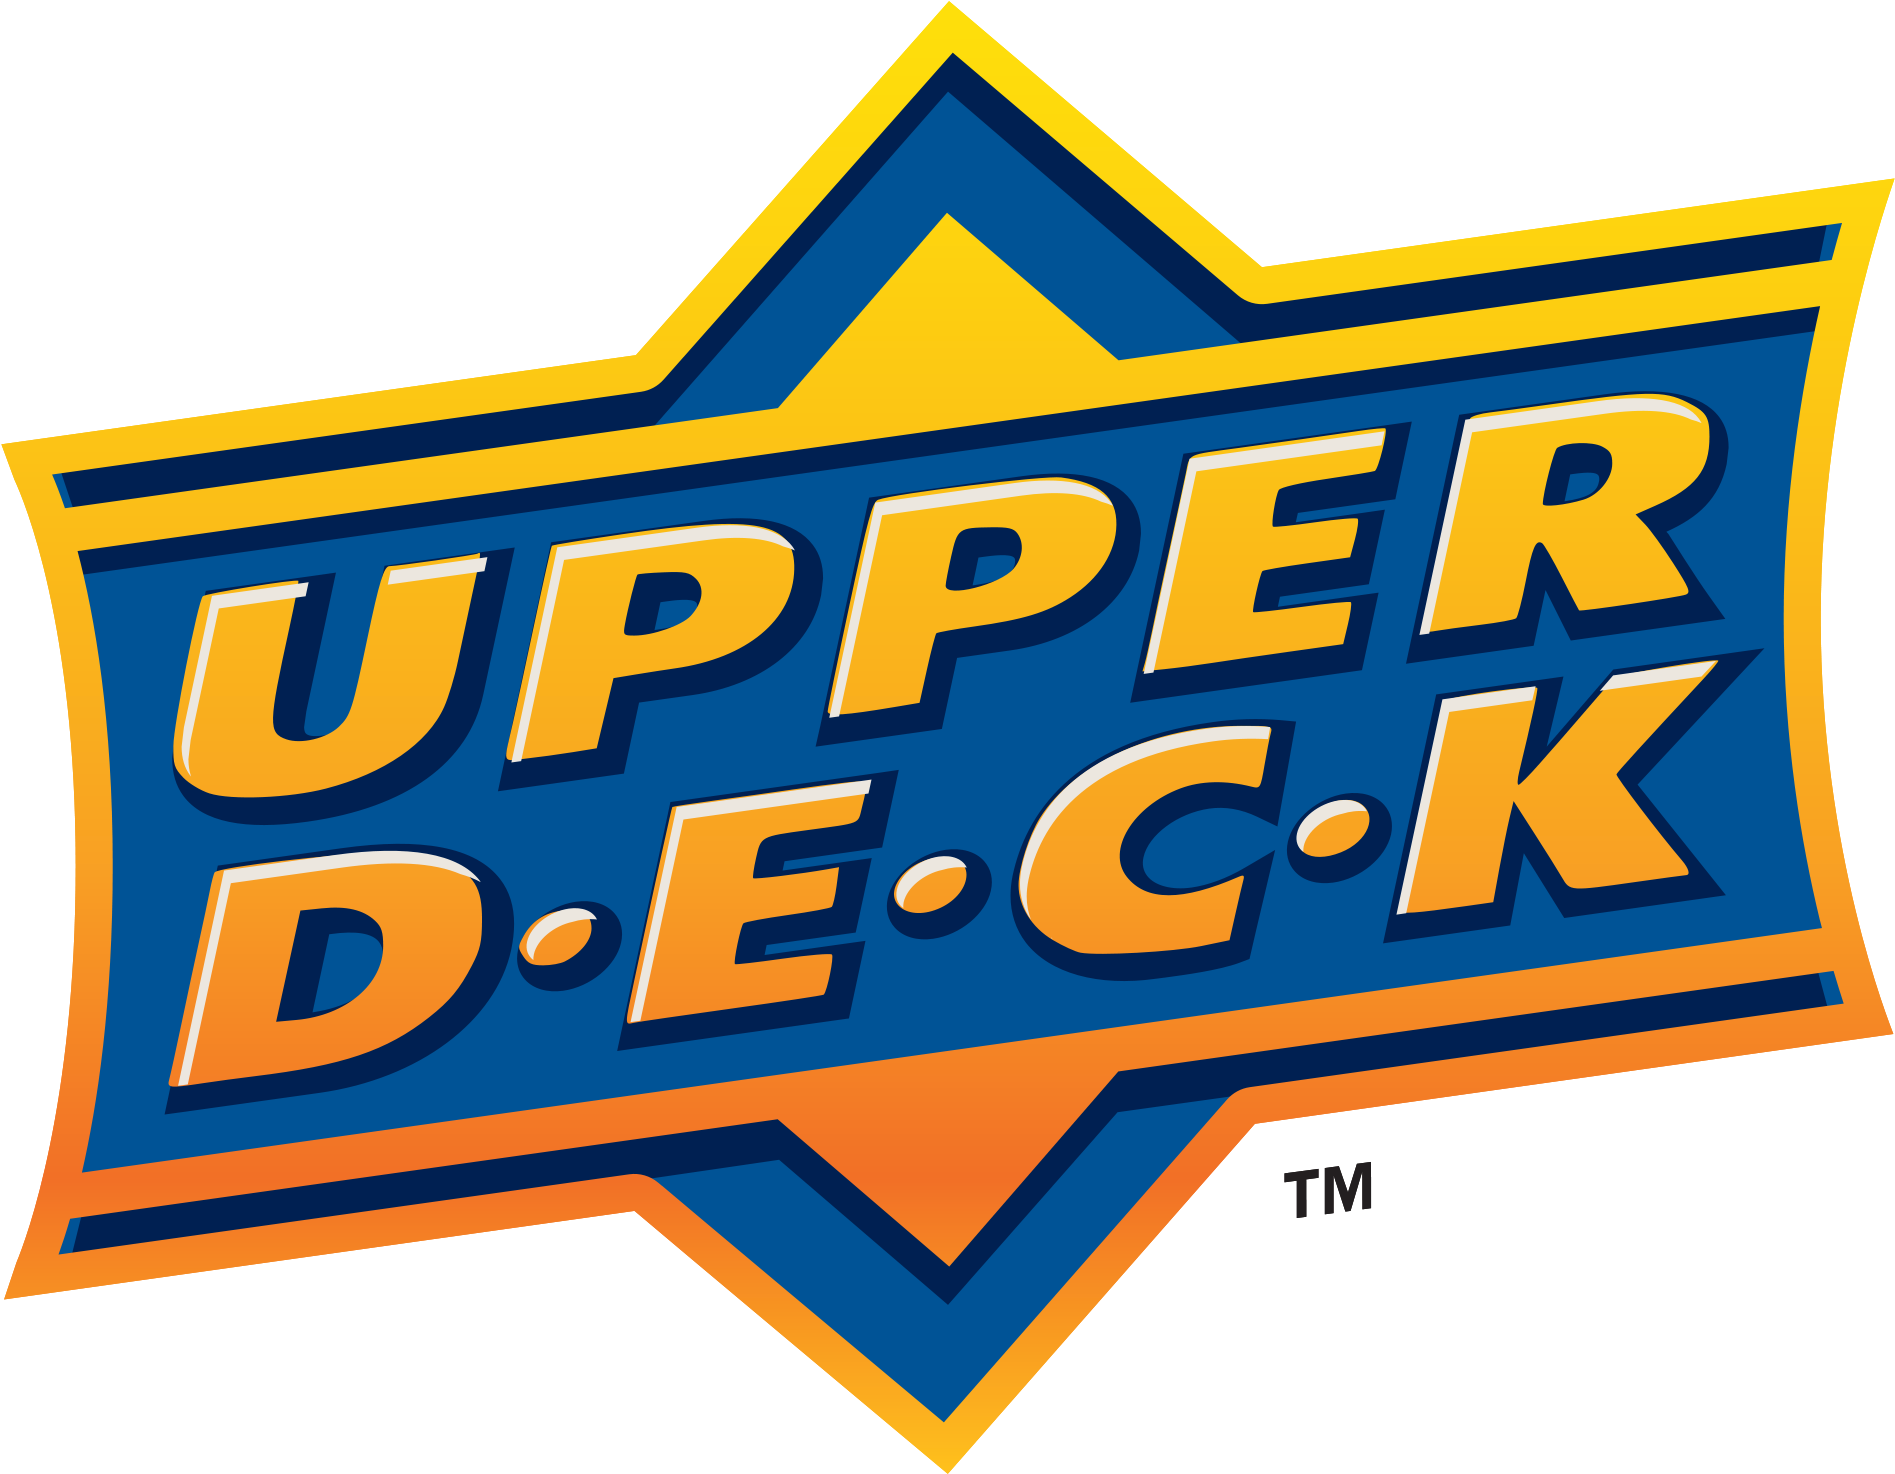 38 Bester Wand Oben Upper Deck - Legendary Marvel Deck Building Game: Civil War Expansion (2000x1887)